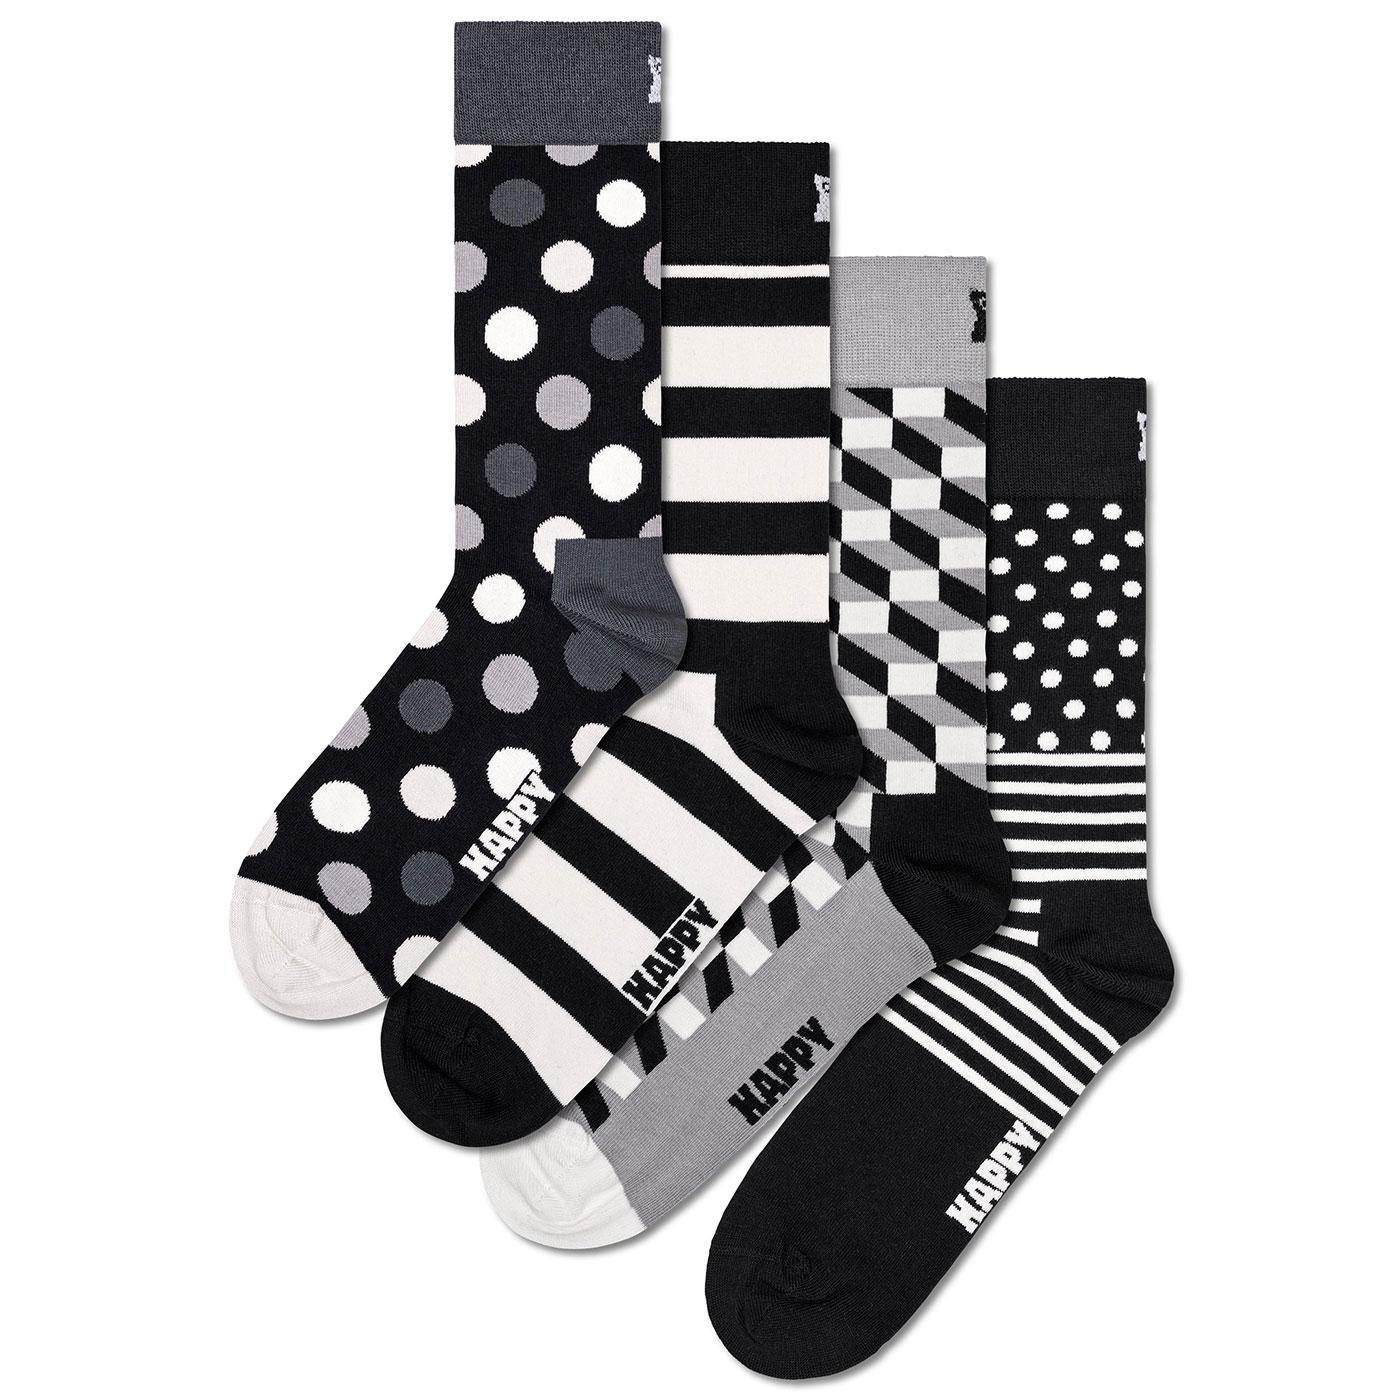 +Happy Socks Black and White 4 Pack Socks Gift Set